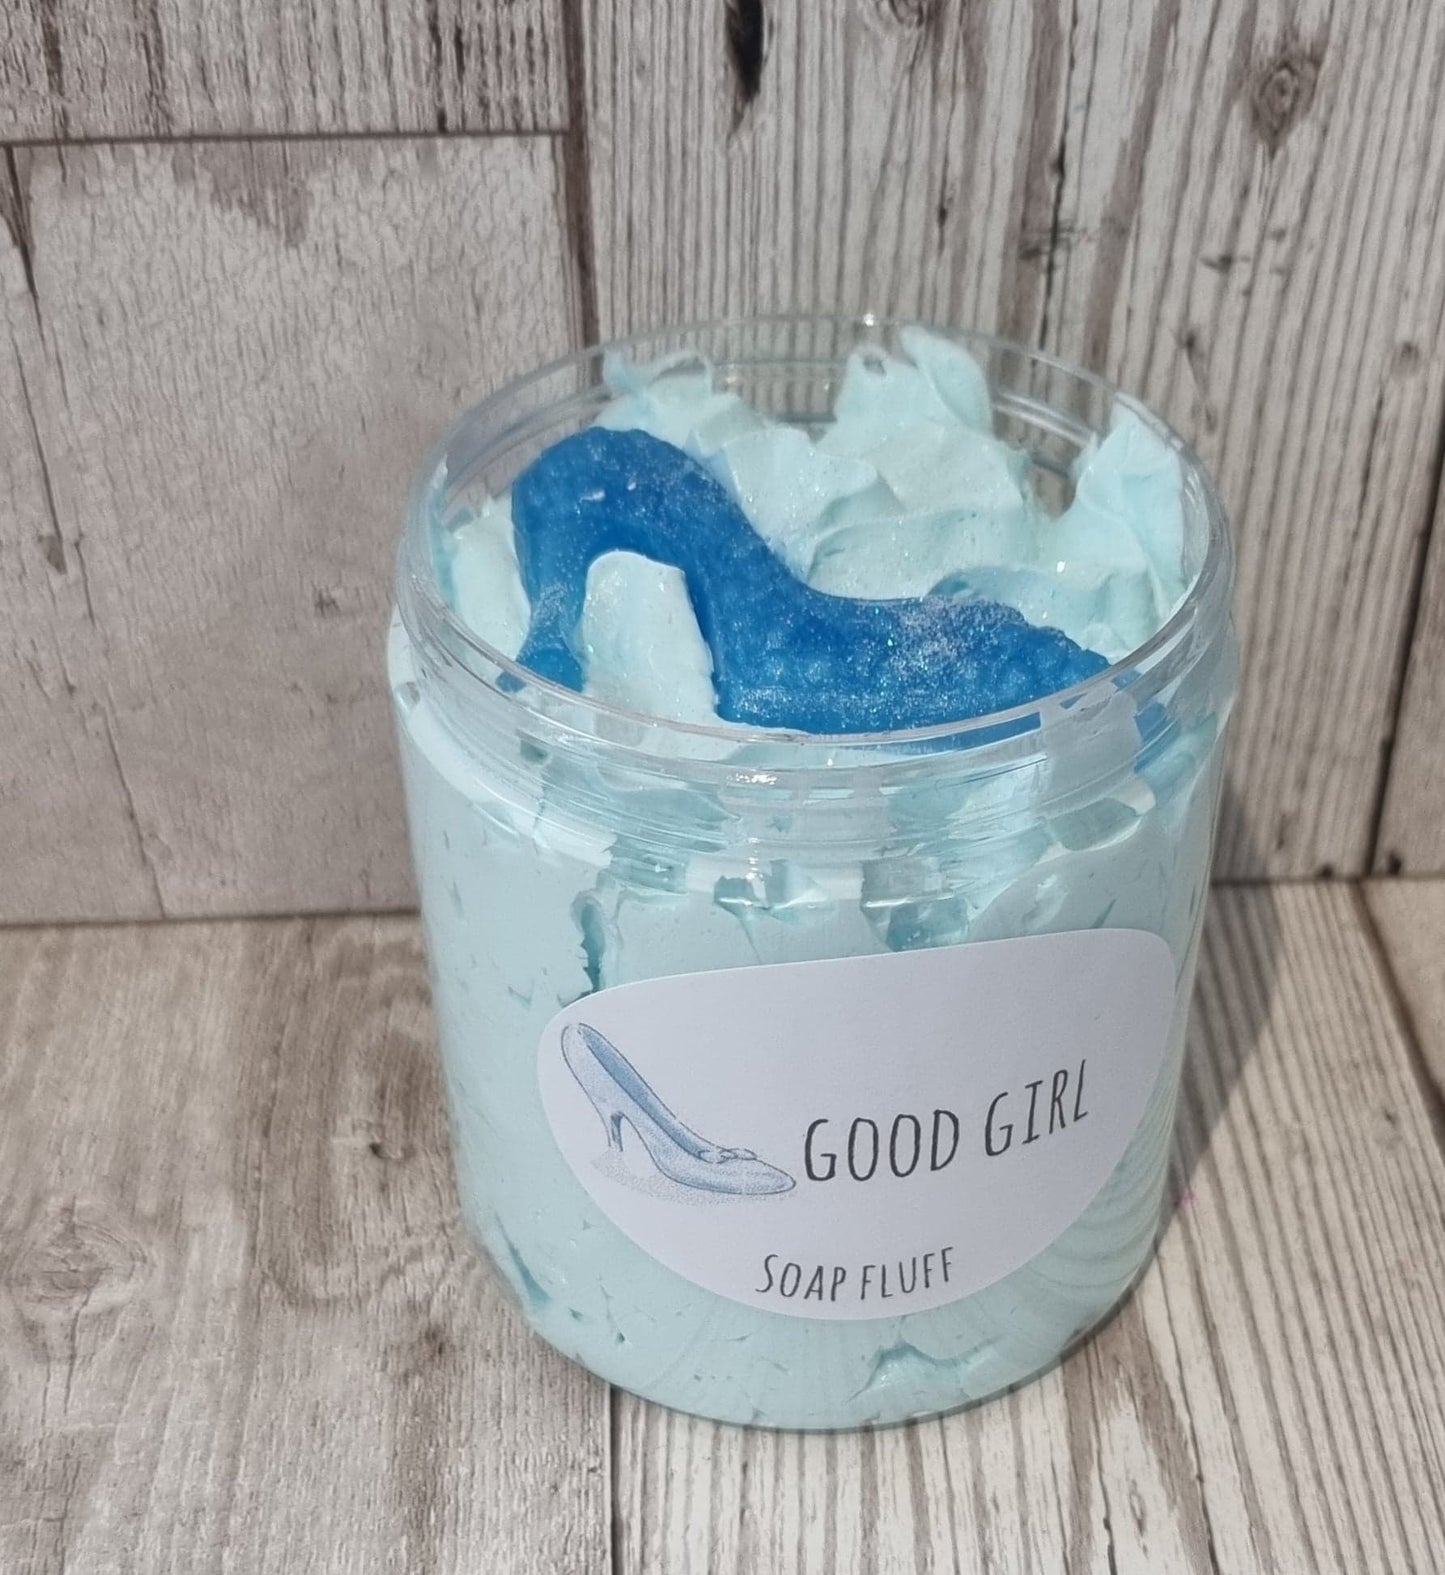 'Good Girl' Soap Fluff